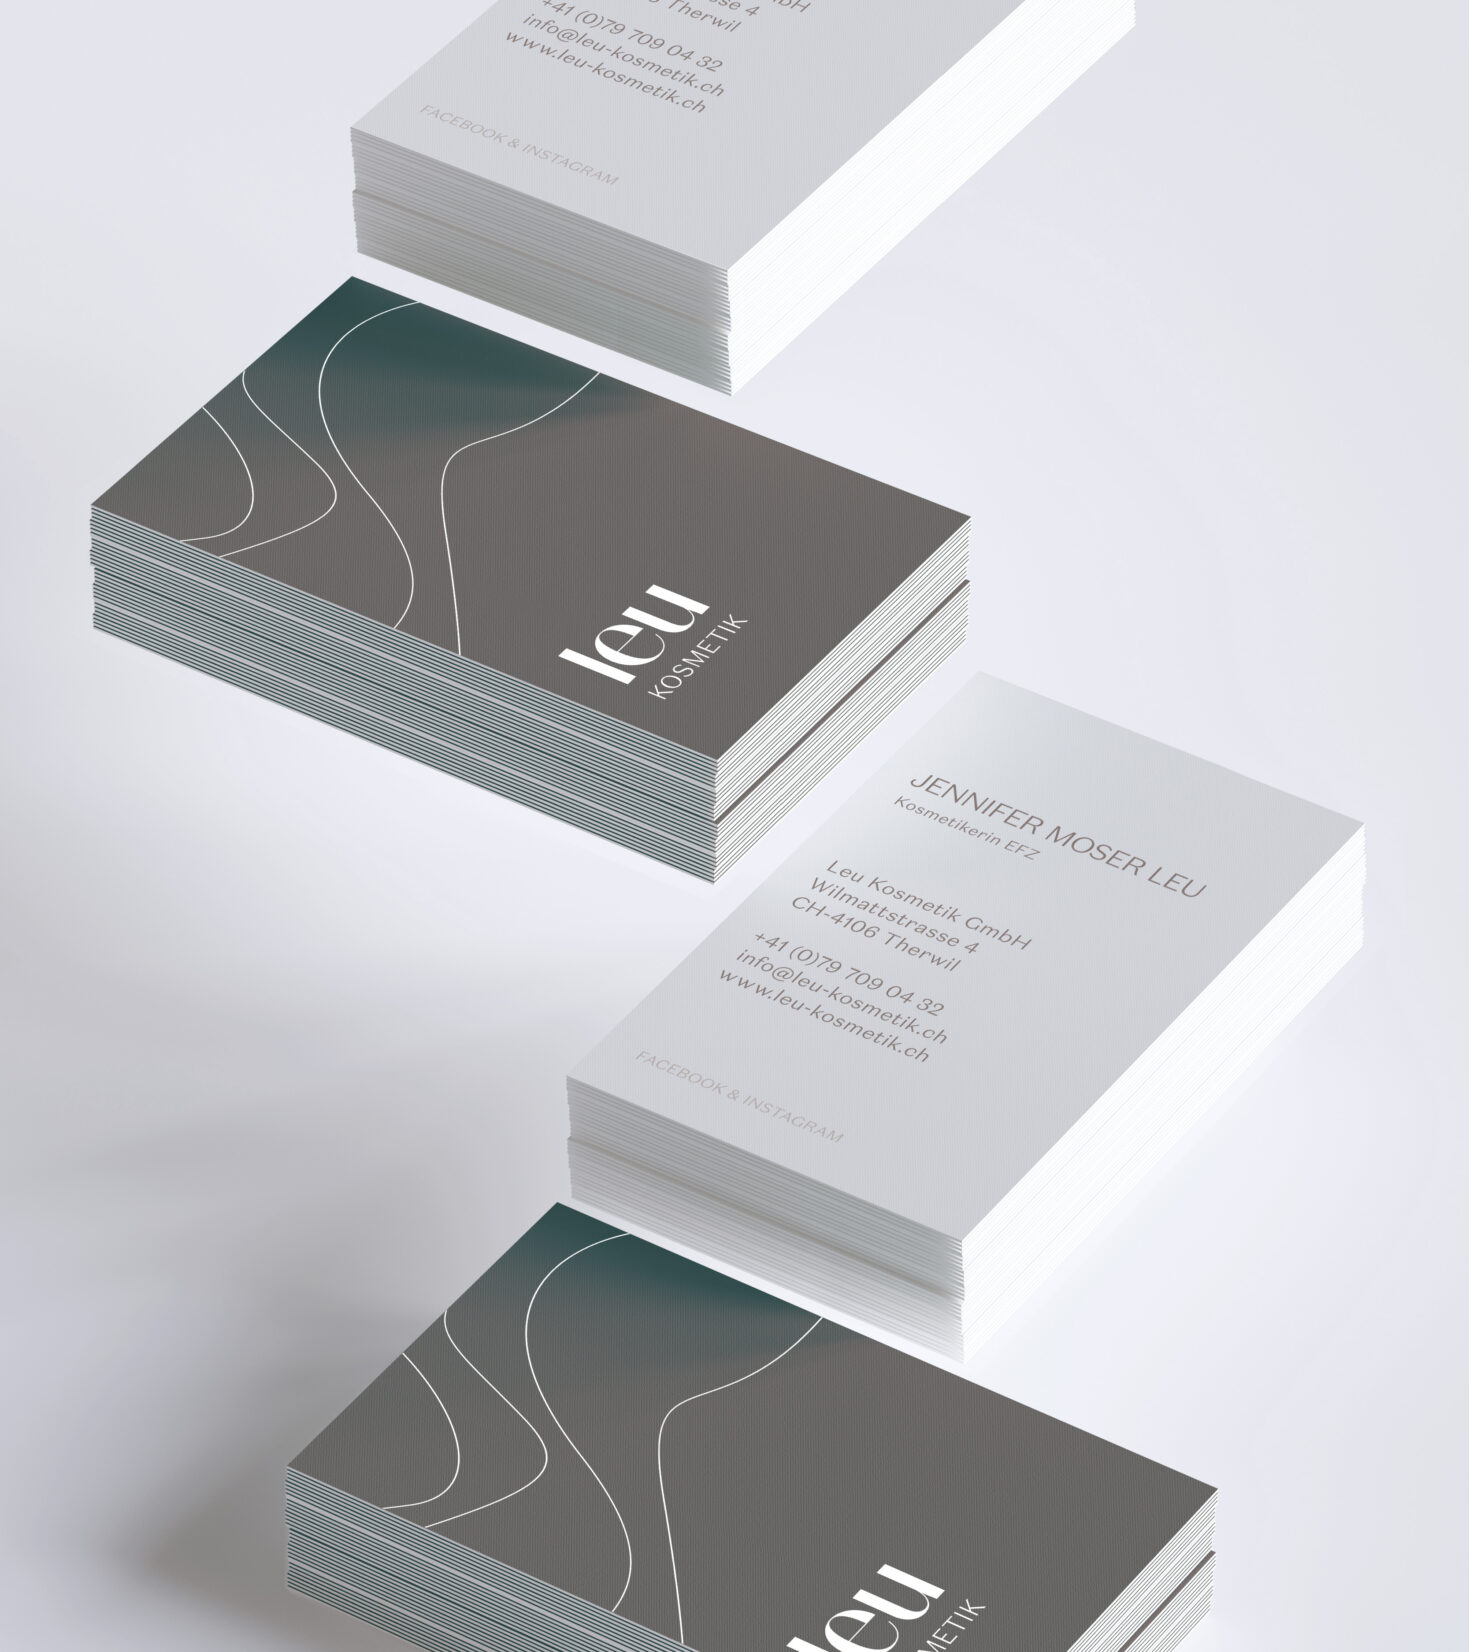 Visitenkarten mit Logo und Grafik-Element gestaltet von Grafikdesign Cueni Basel.